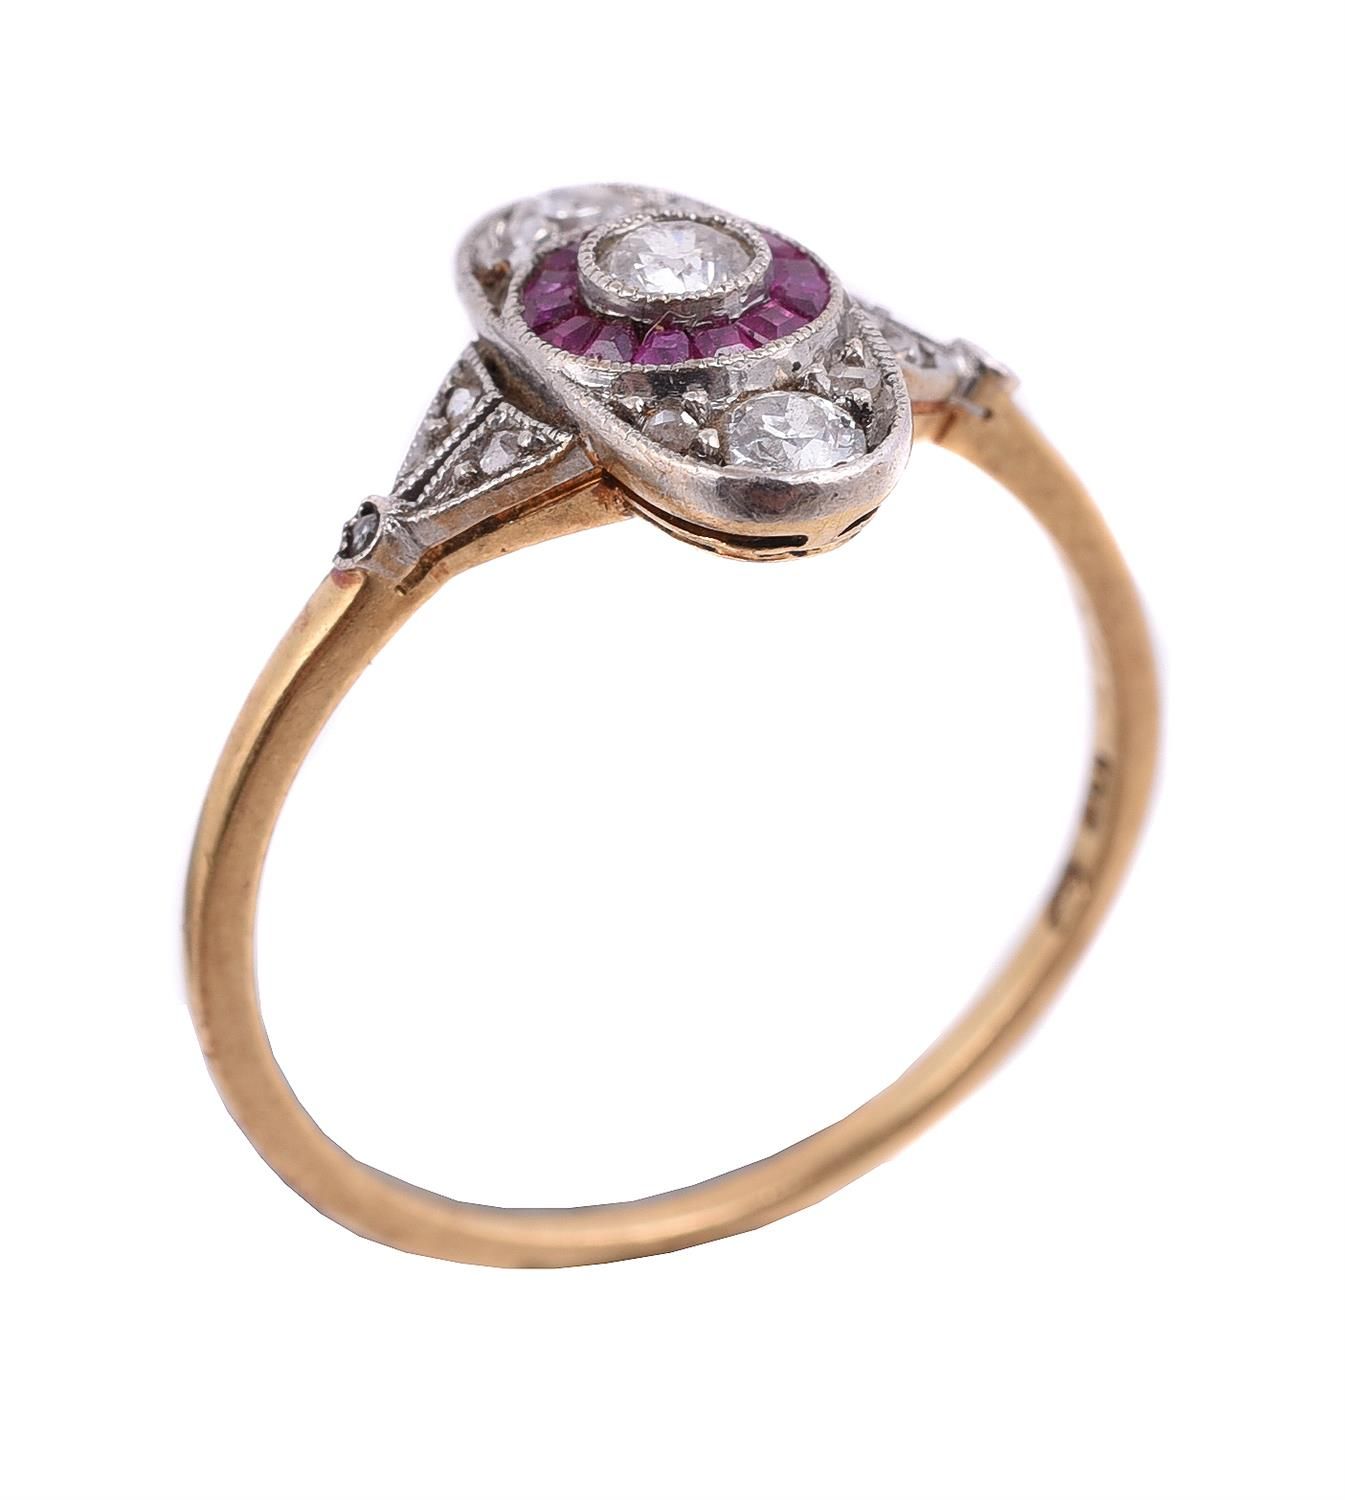 A diamond and ruby panel ring Un anello a pannello con diamanti e rubini, il pan&hellip;